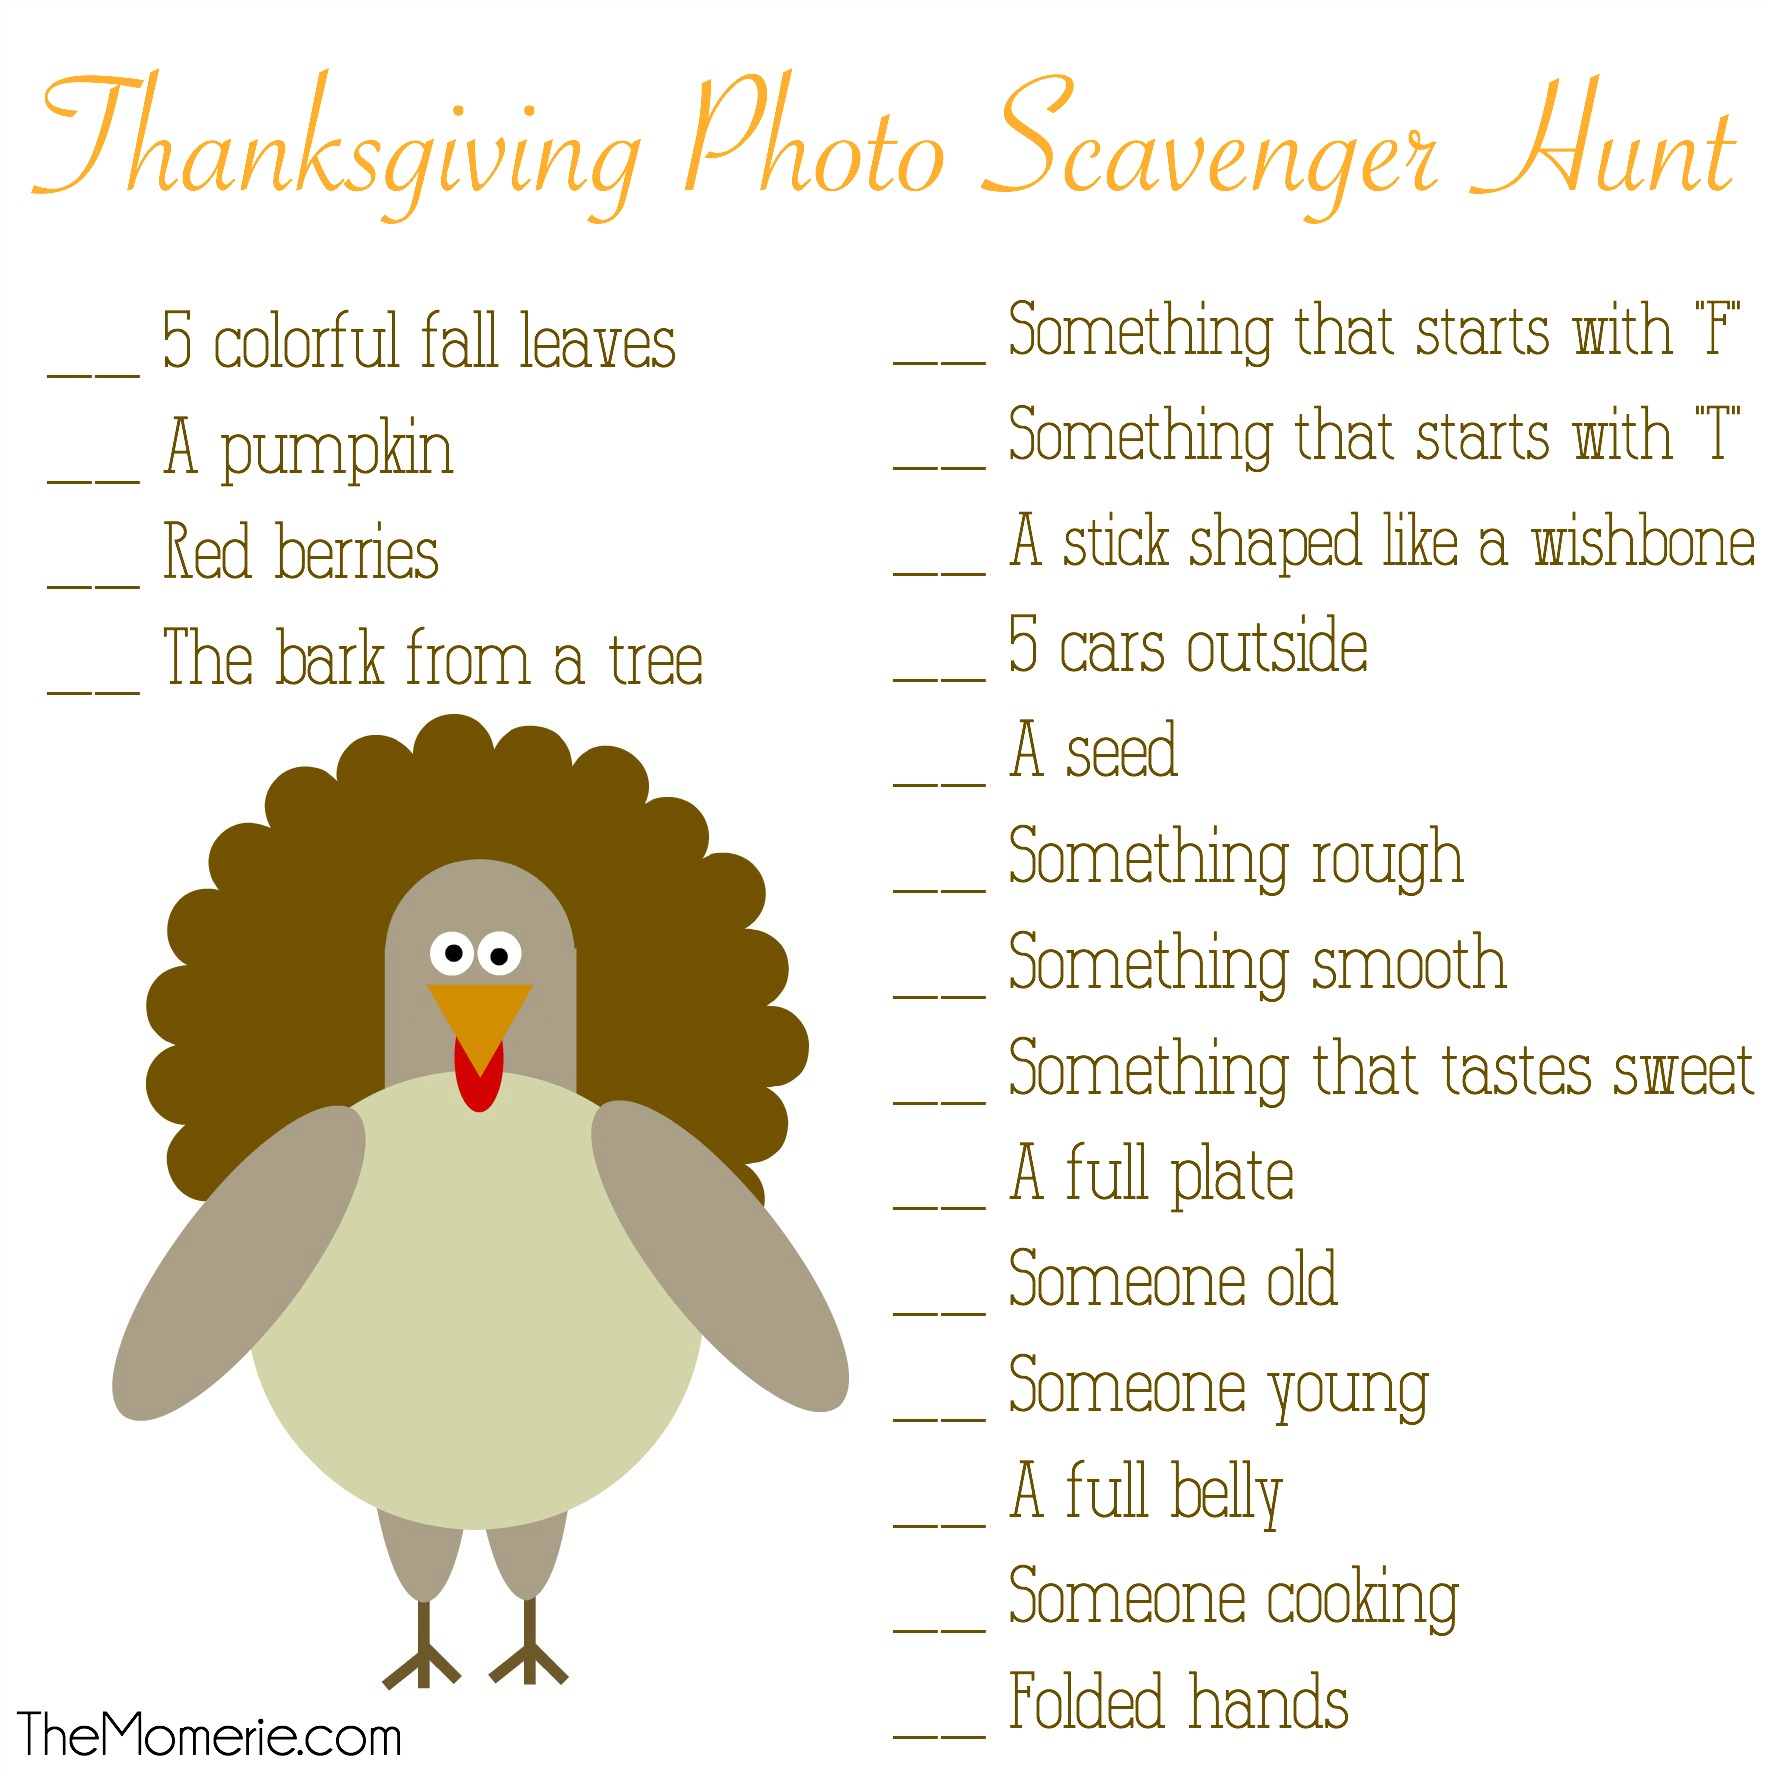 Thanksgiving Photo Scavenger Hunt | The Momerie